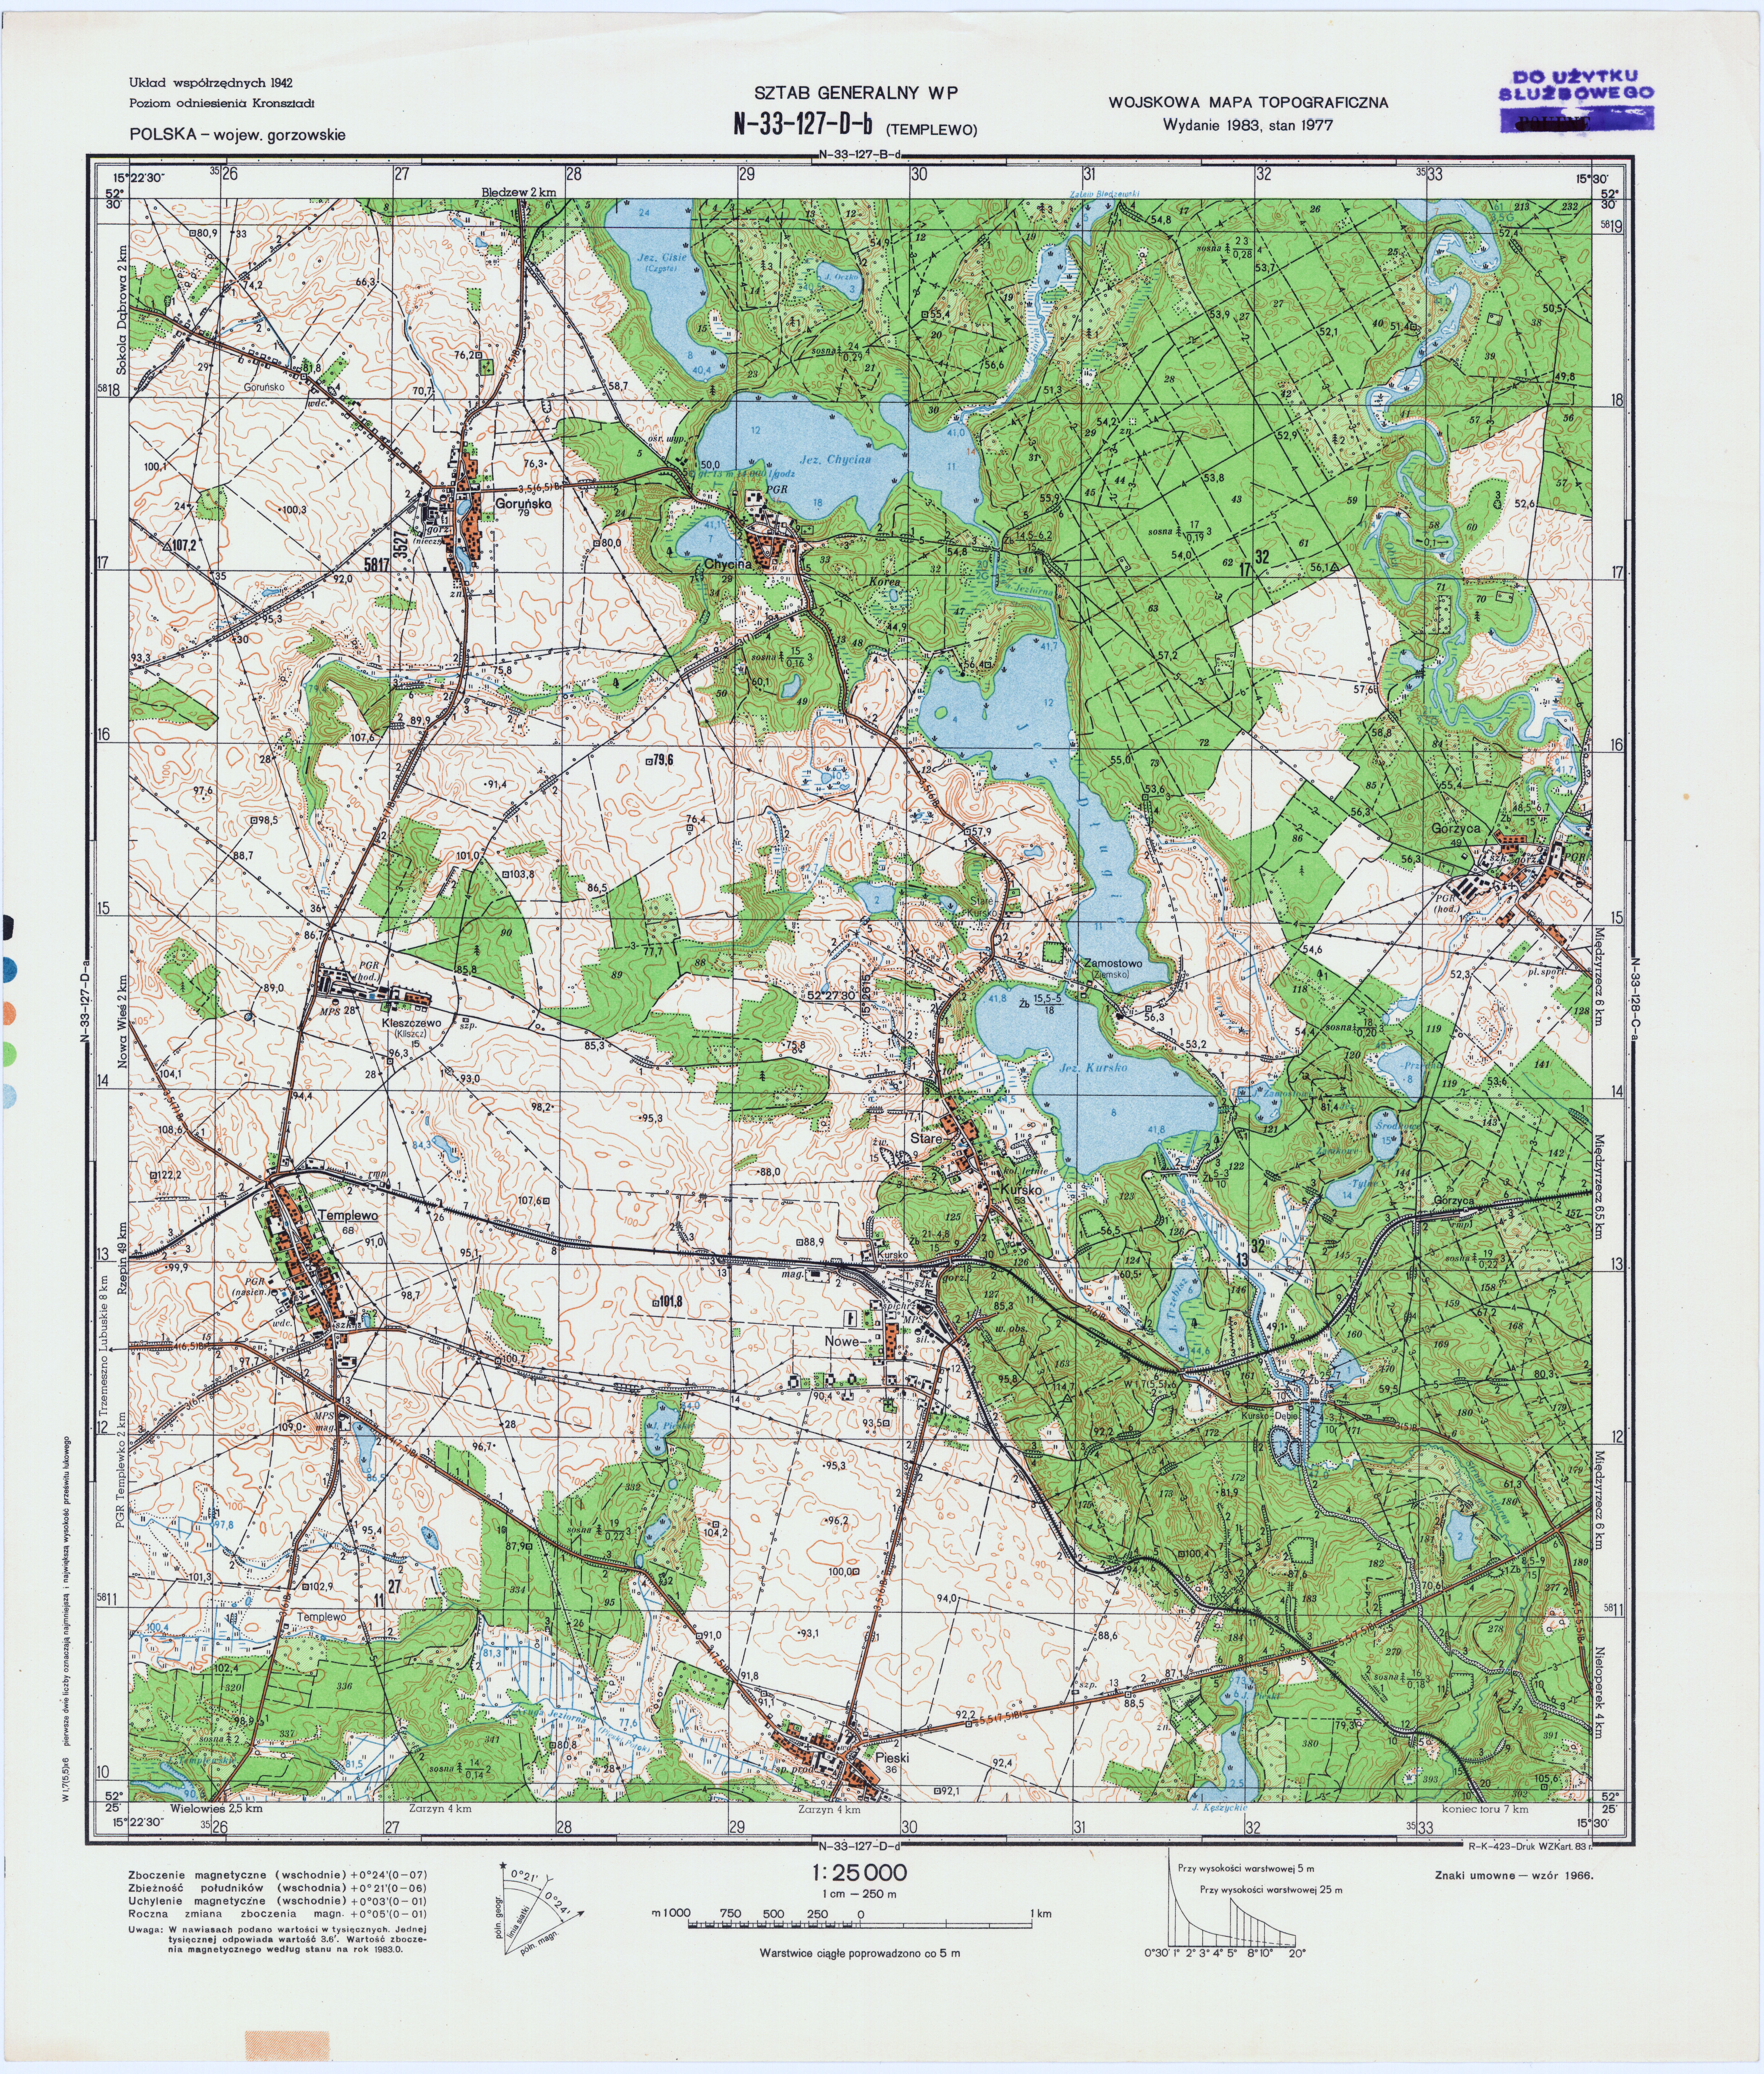 Mapy topograficzne LWP 1_25 000 - N-33-127-D-b_TEMPLEWO_1983.jpg